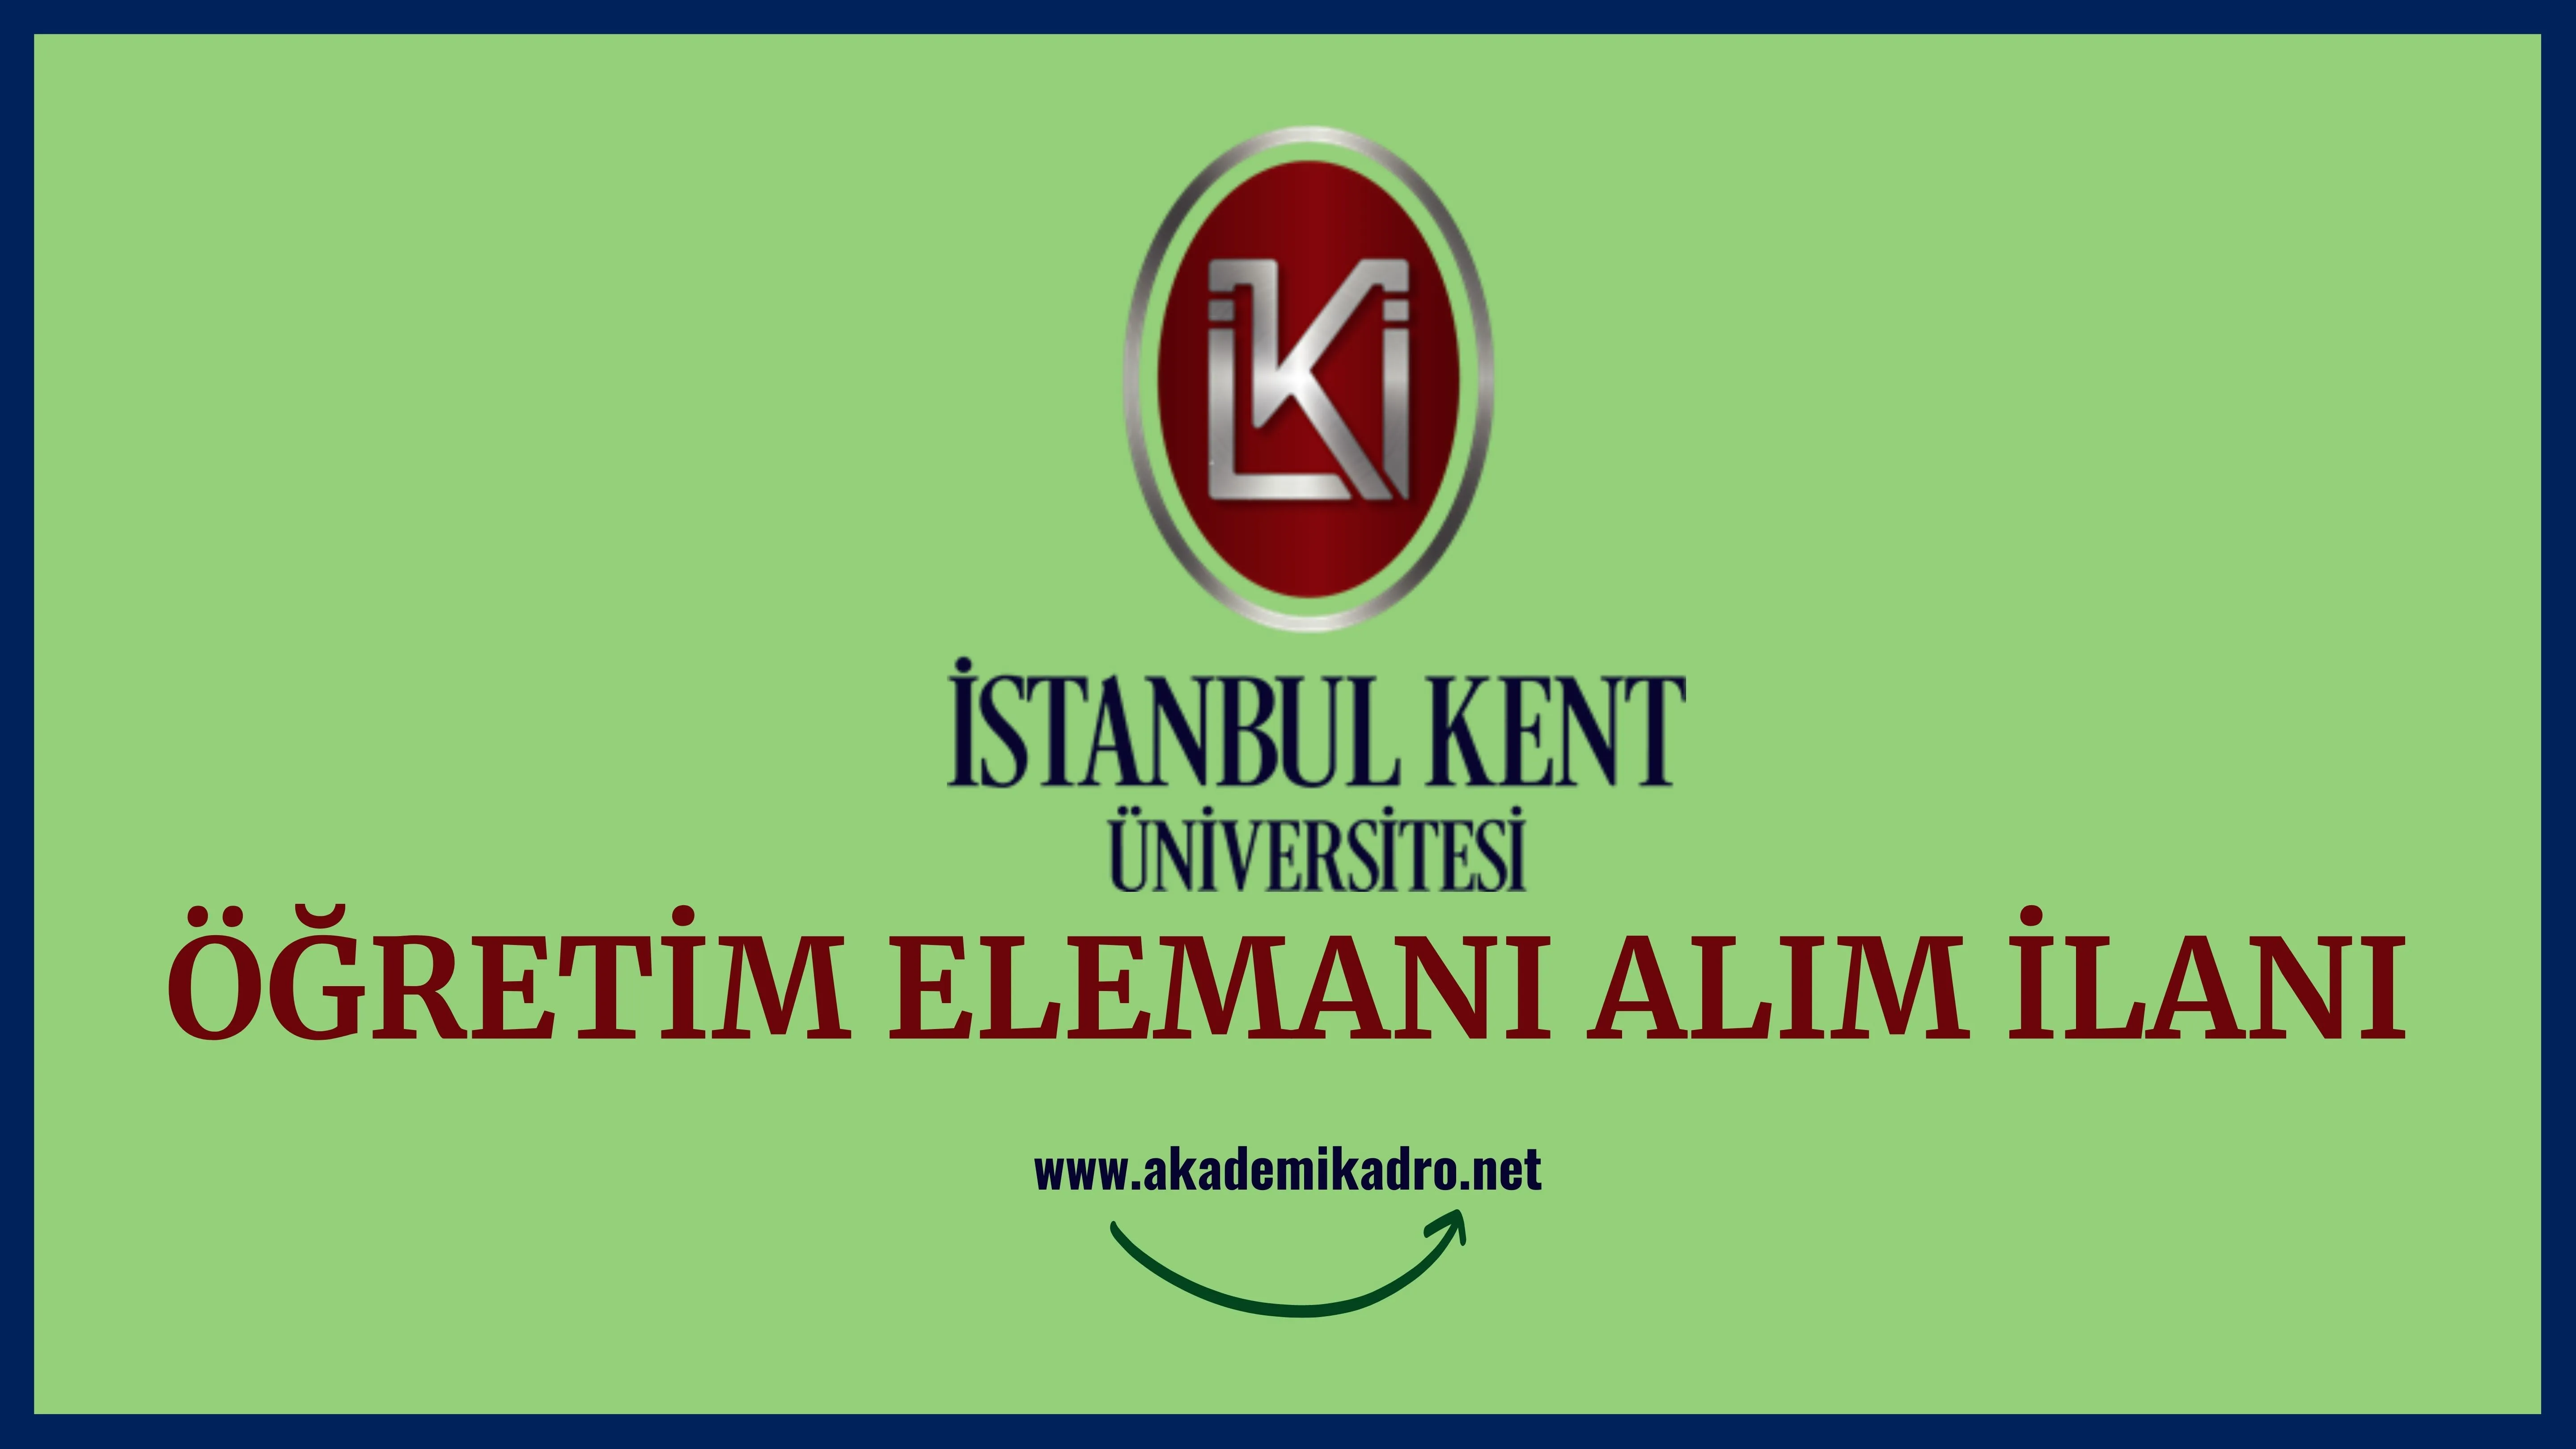 İstanbul Kent Üniversitesi 7 Araştırma görevlisi, 5 Öğretim görevlisi ve 20 Öğretim üyesi alacak.